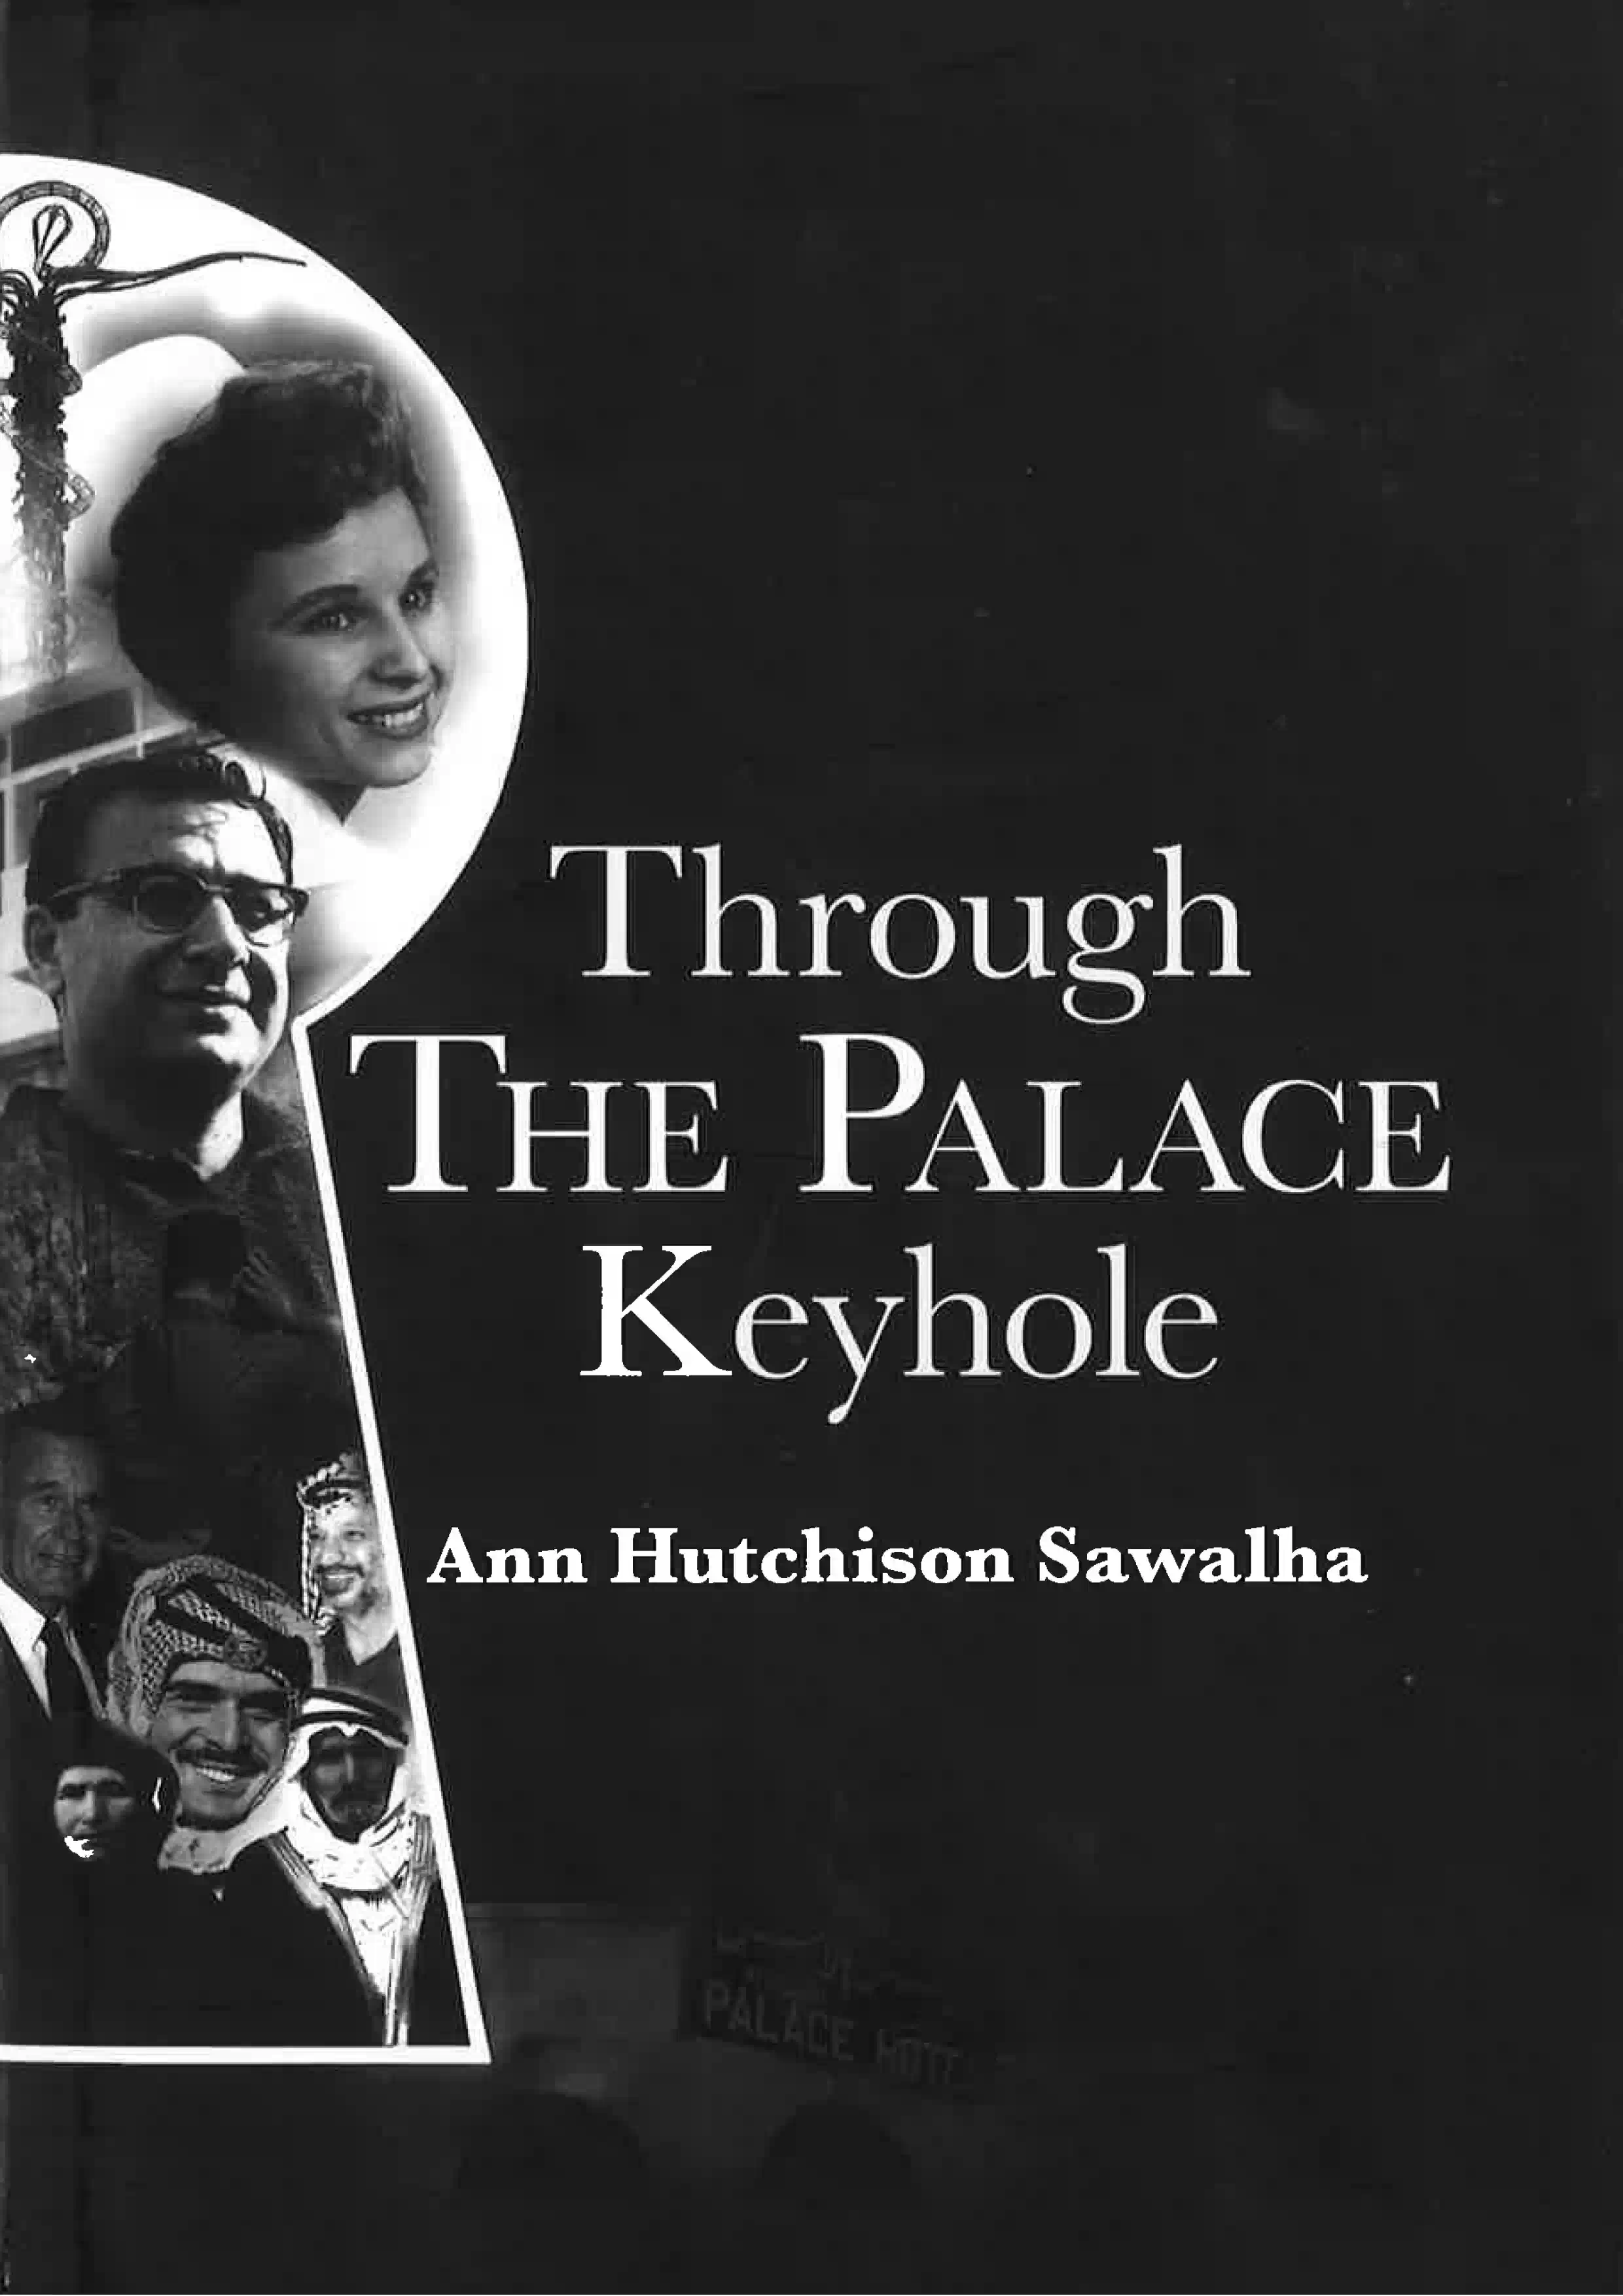 Through The Palace Keyhole